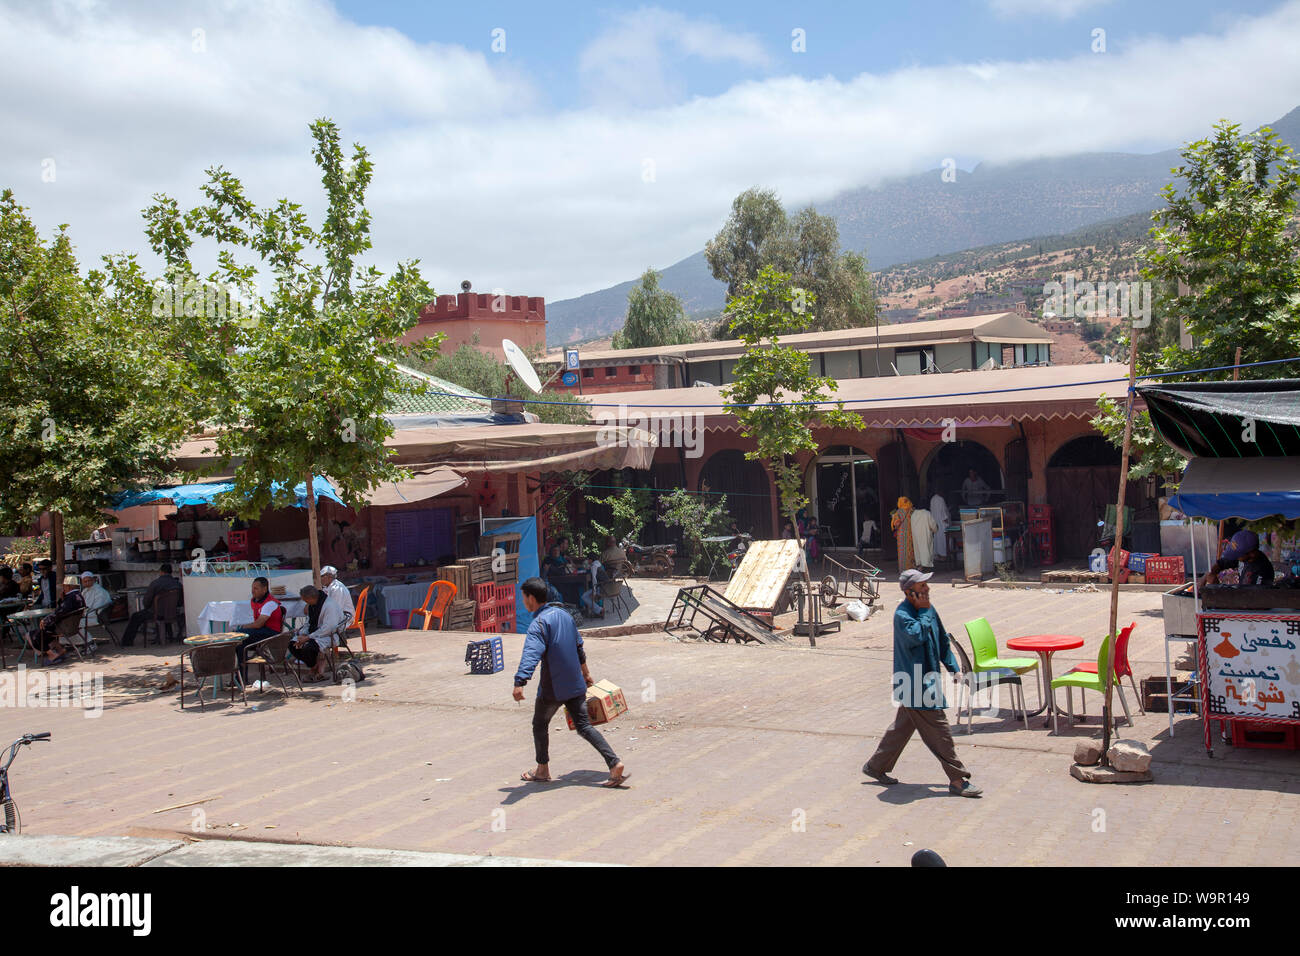 Asni Market Food Kiosks on Square in Atlas Mountains near Marrakech, Morocco Stock Photo